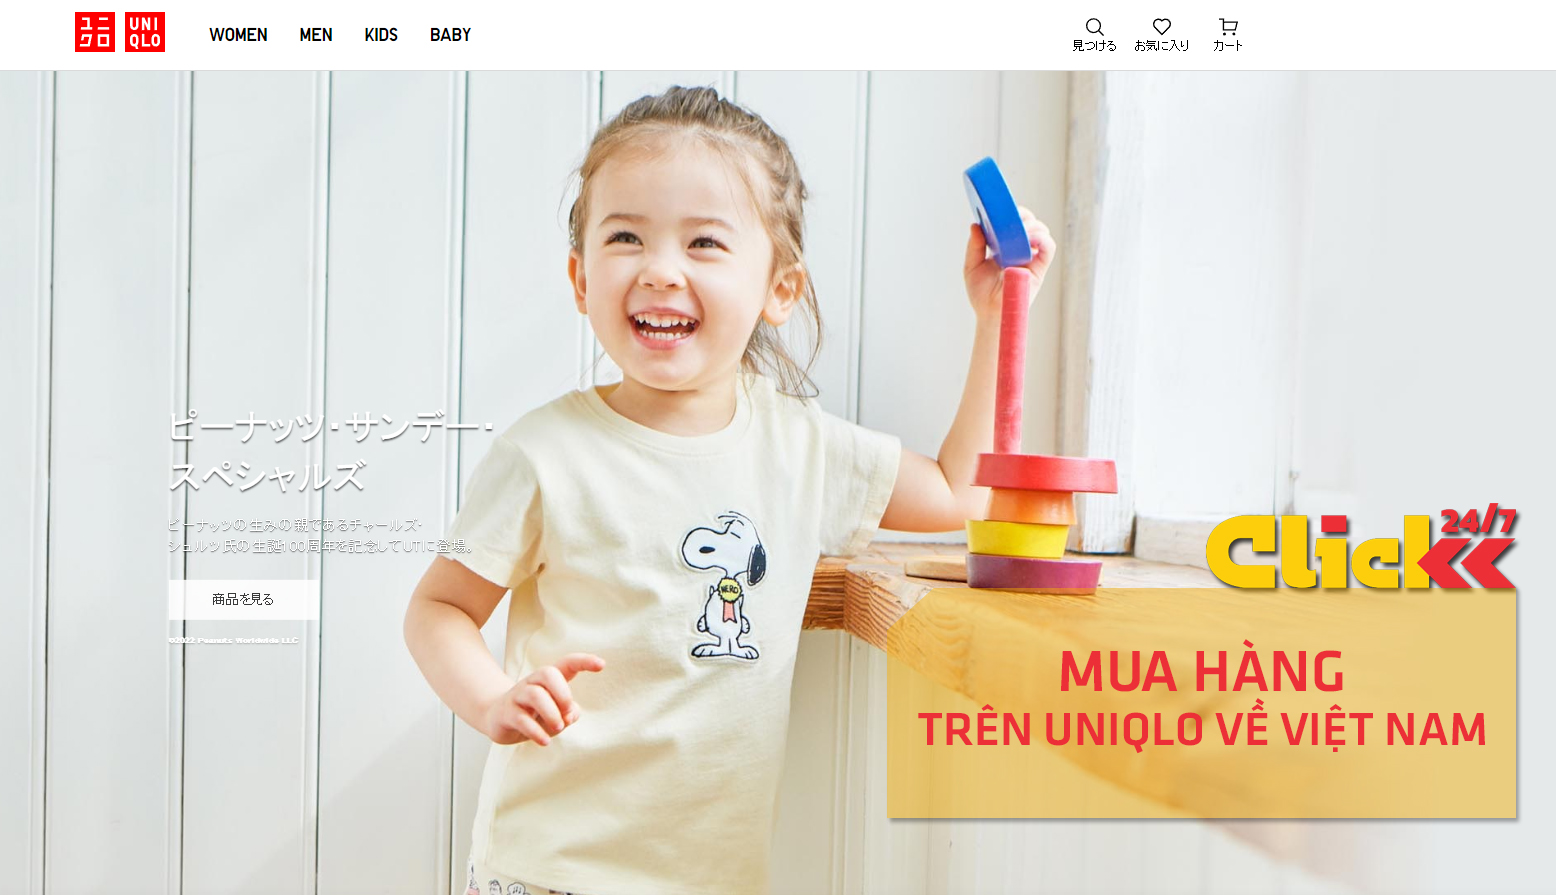 Trải nghiệm cửa hàng trực tuyến UNIQLO tại Việt Nam để nhận ưu đãi và quà  tặng  Phong cách sống  Thế Giới Số